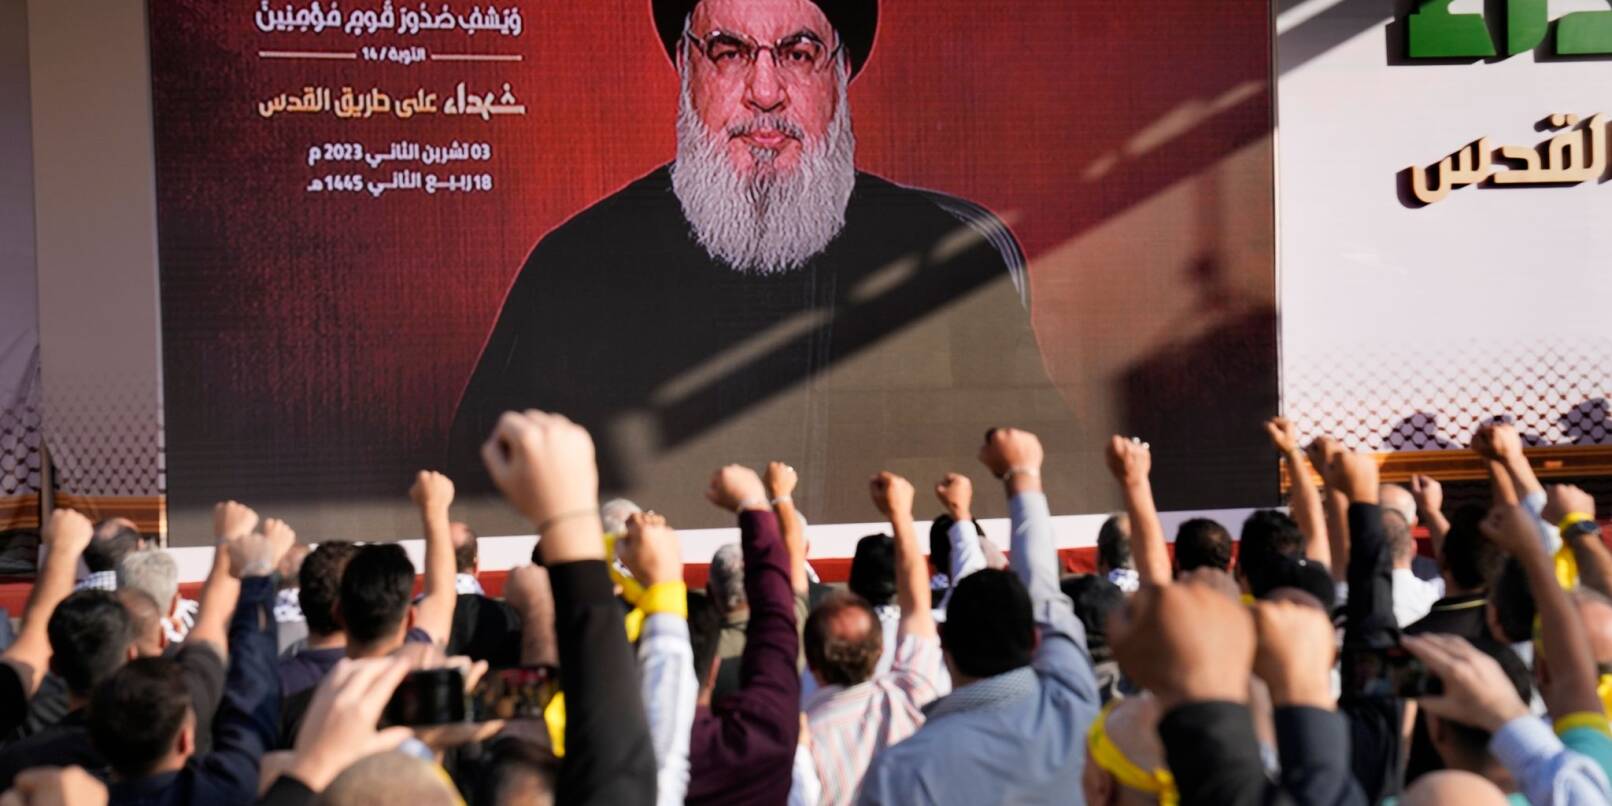 Anhänger der vom Iran unterstützten Hisbollah erheben in Beirut ihre Fäuste und jubeln, als Hisbollah-Führer Hassan Nasrallah während einer Kundgebung zum Gedenken an in den vergangenen Wochen getötete Hisbollah-Kämpfer über eine Videoverbindung erscheint.